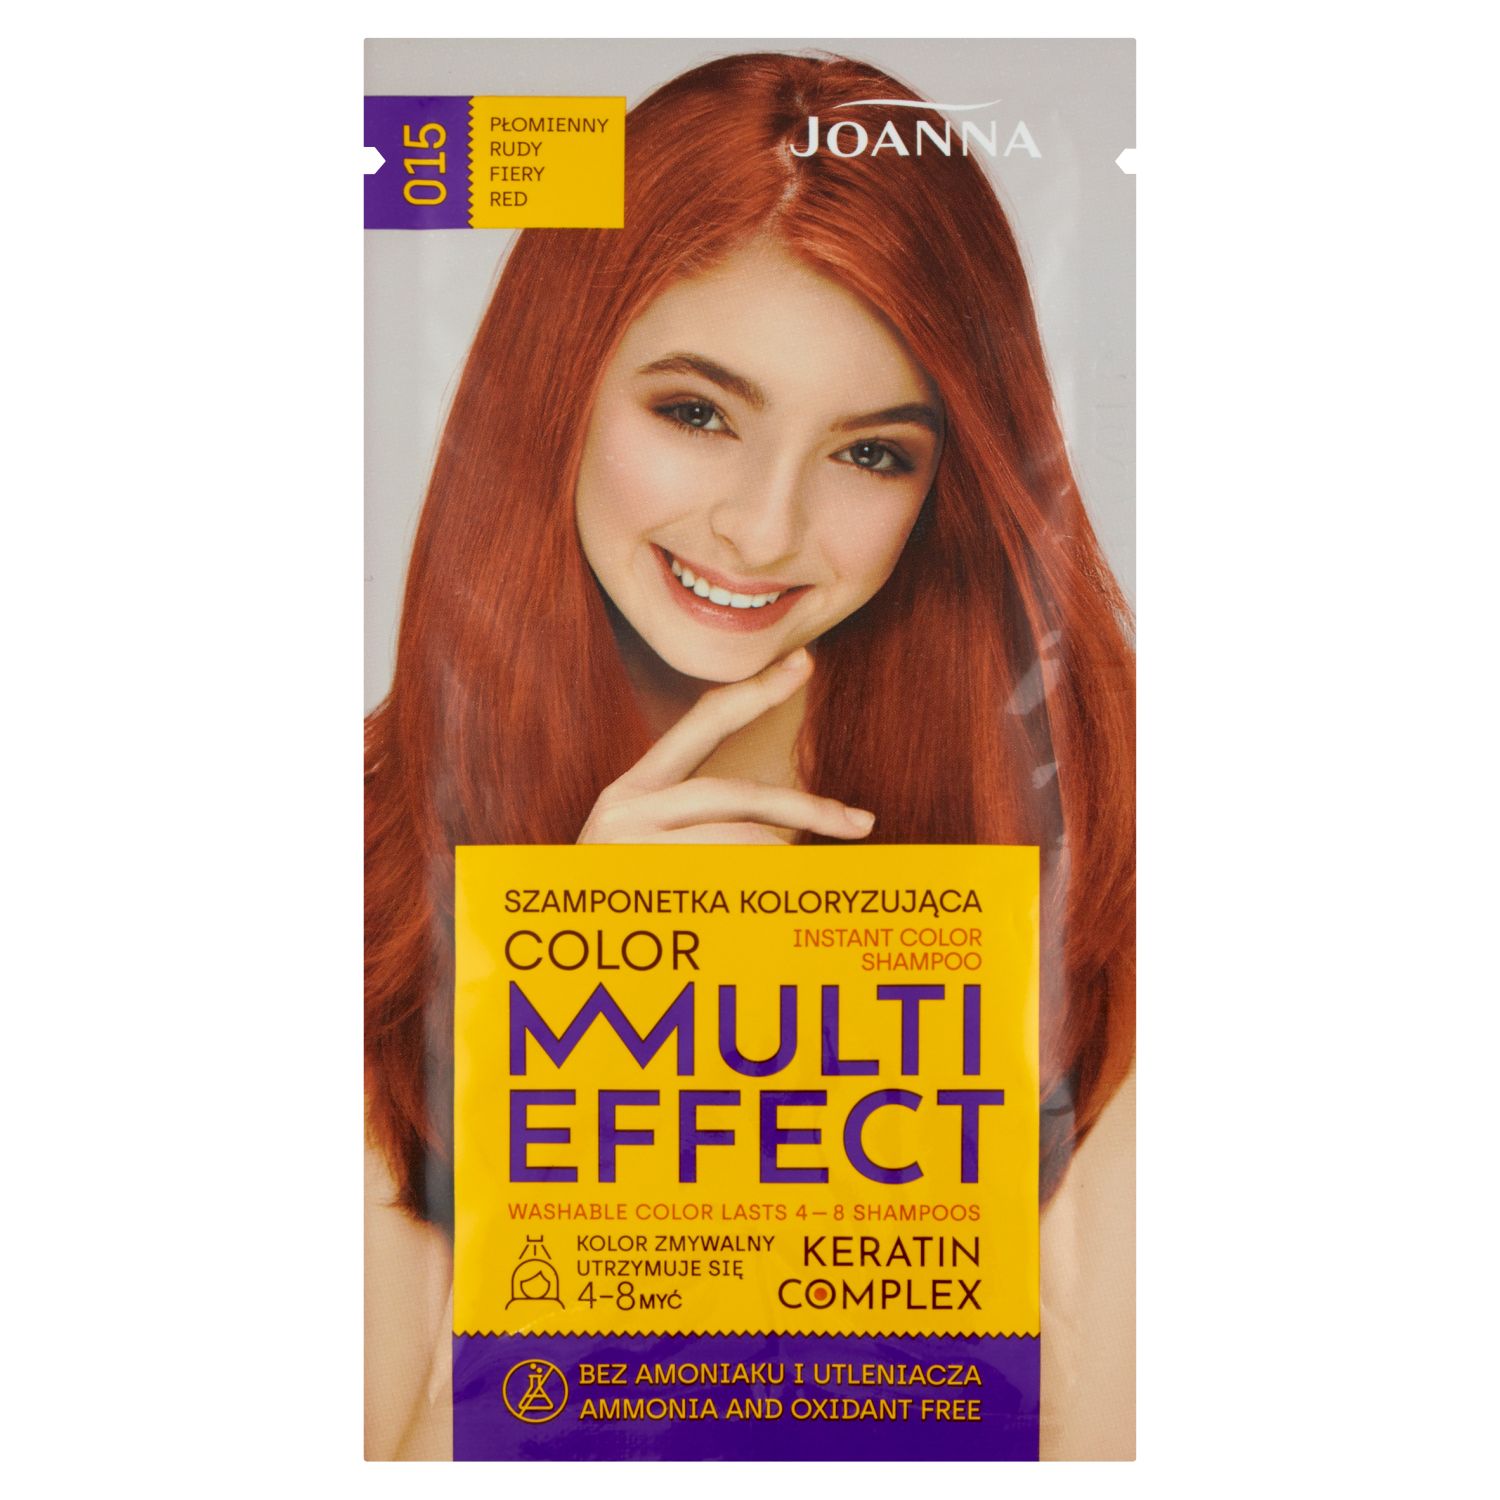 Joanna Multi Effect szamponetka koloryzująca 015 płomienny rudy, 35 g |  hebe.pl